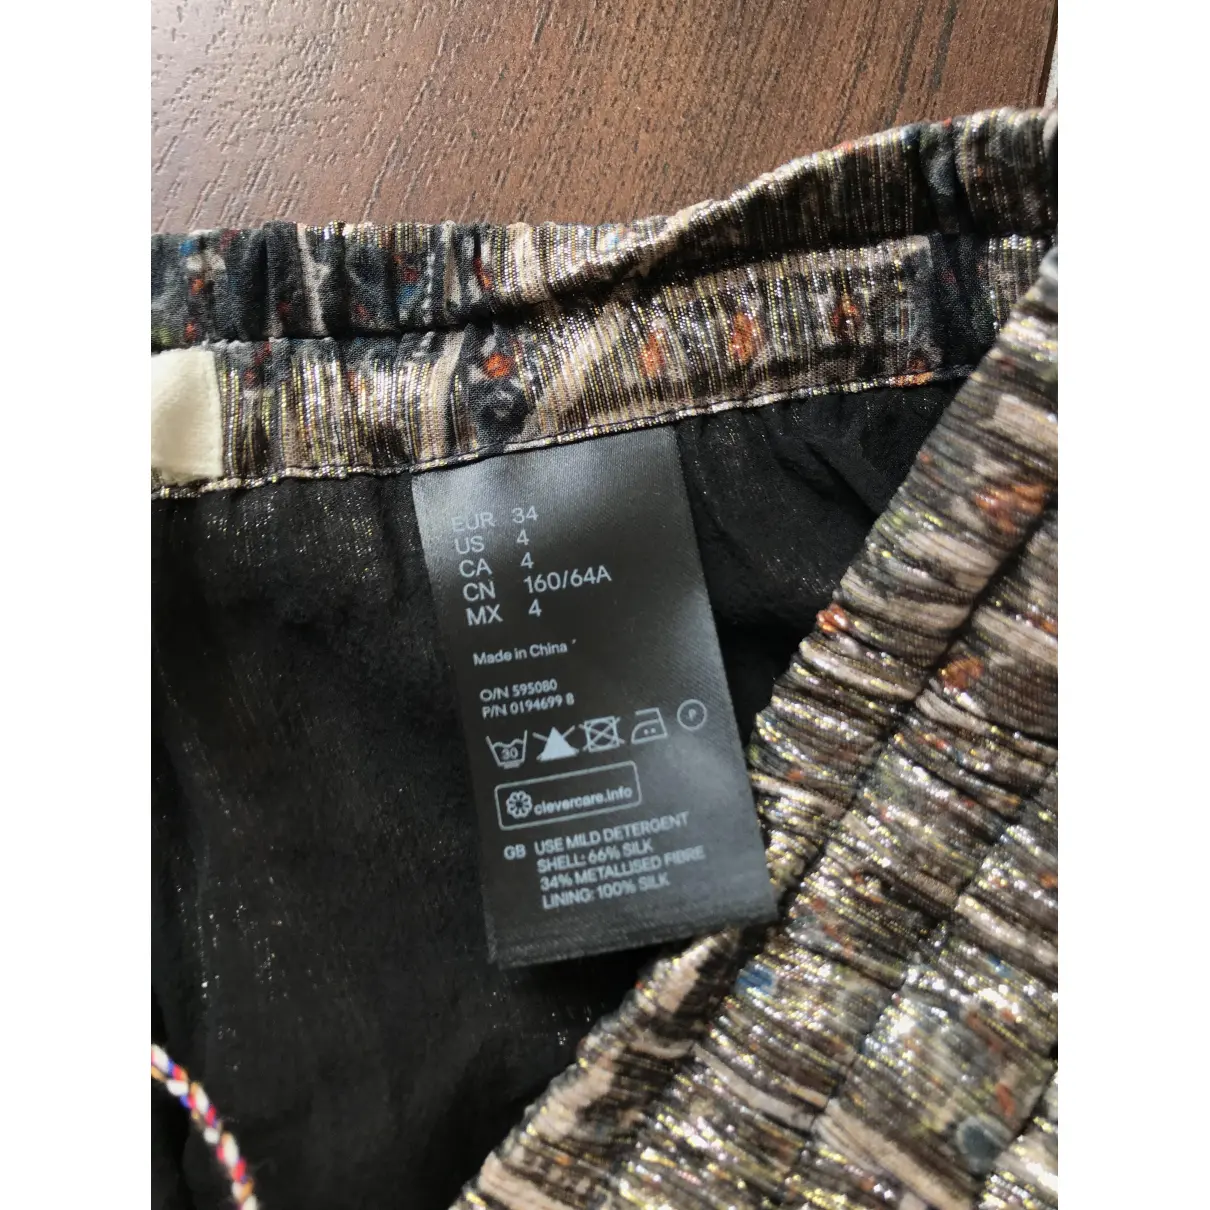 Luxury Isabel Marant Pour H&M Trousers Women